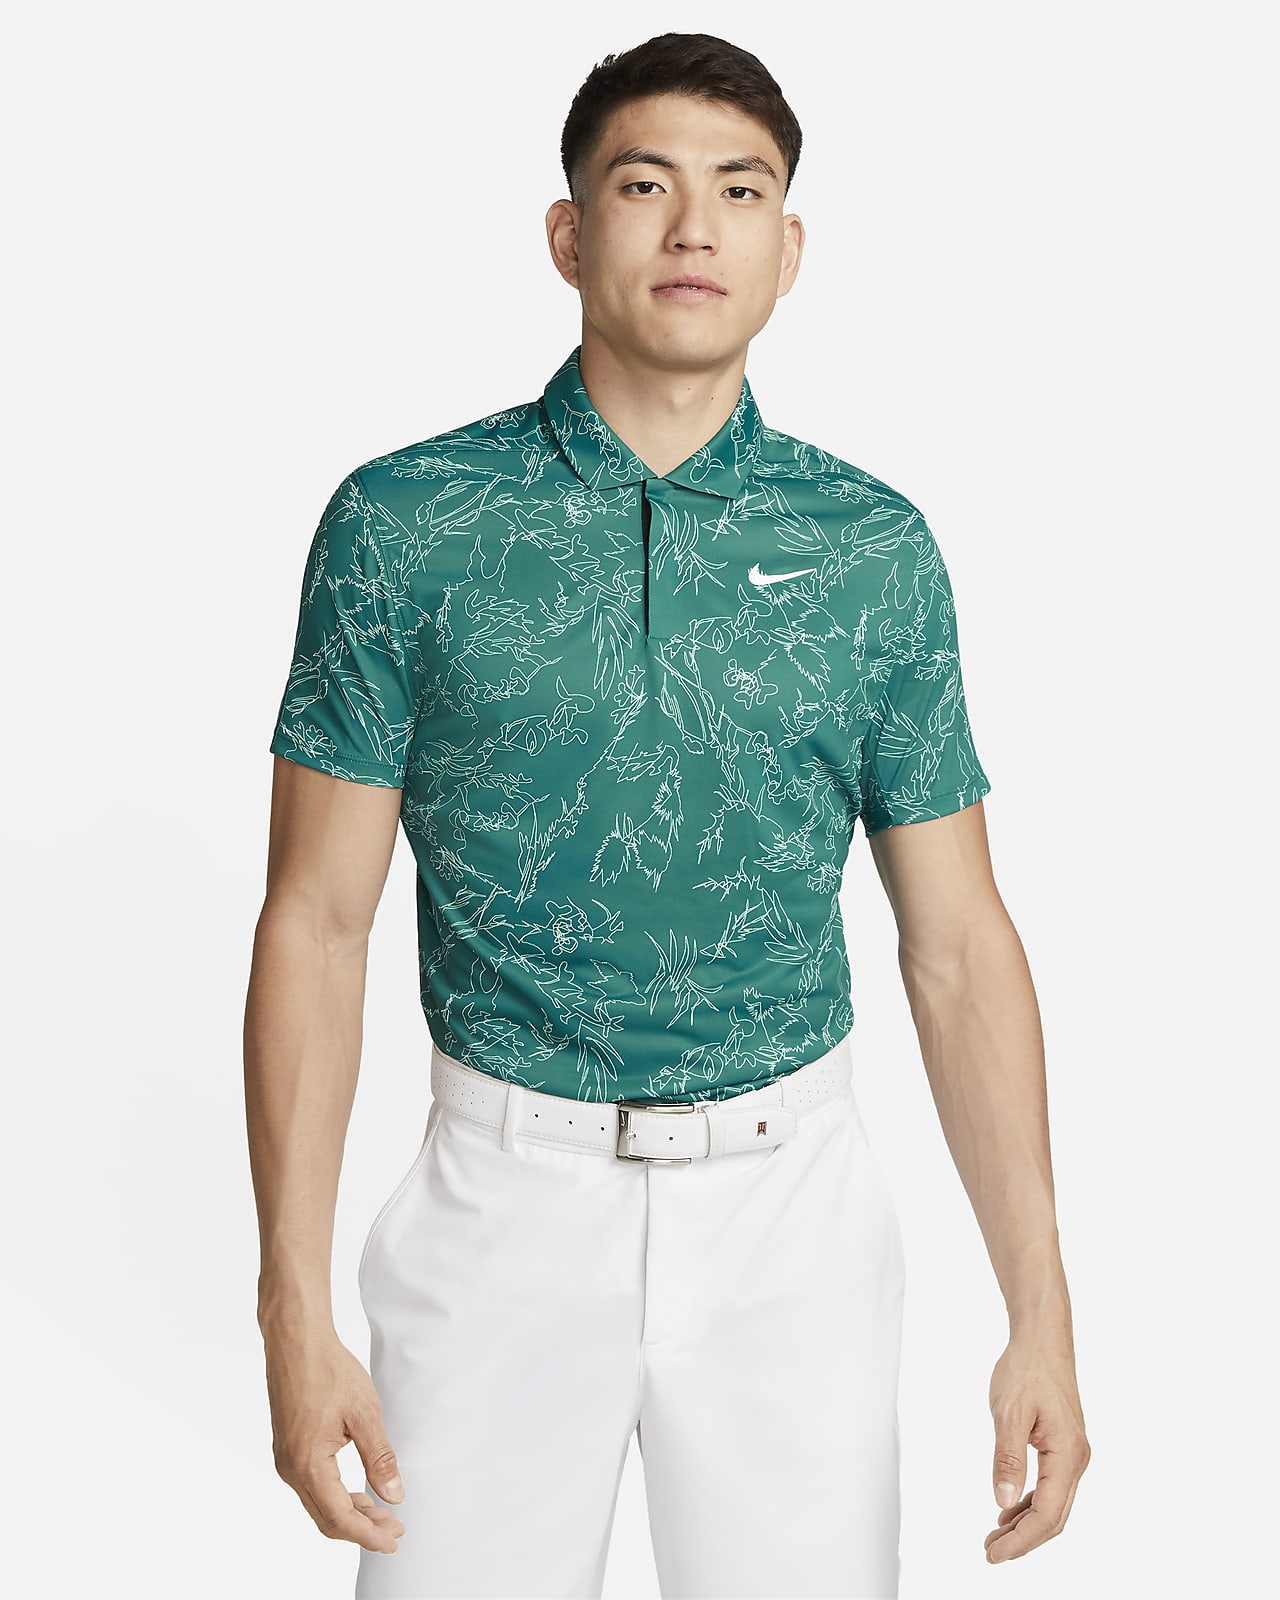 เสื้อโปโลกอล์ฟผู้ชาย Nike Dri-FIT ADV Tiger Woods